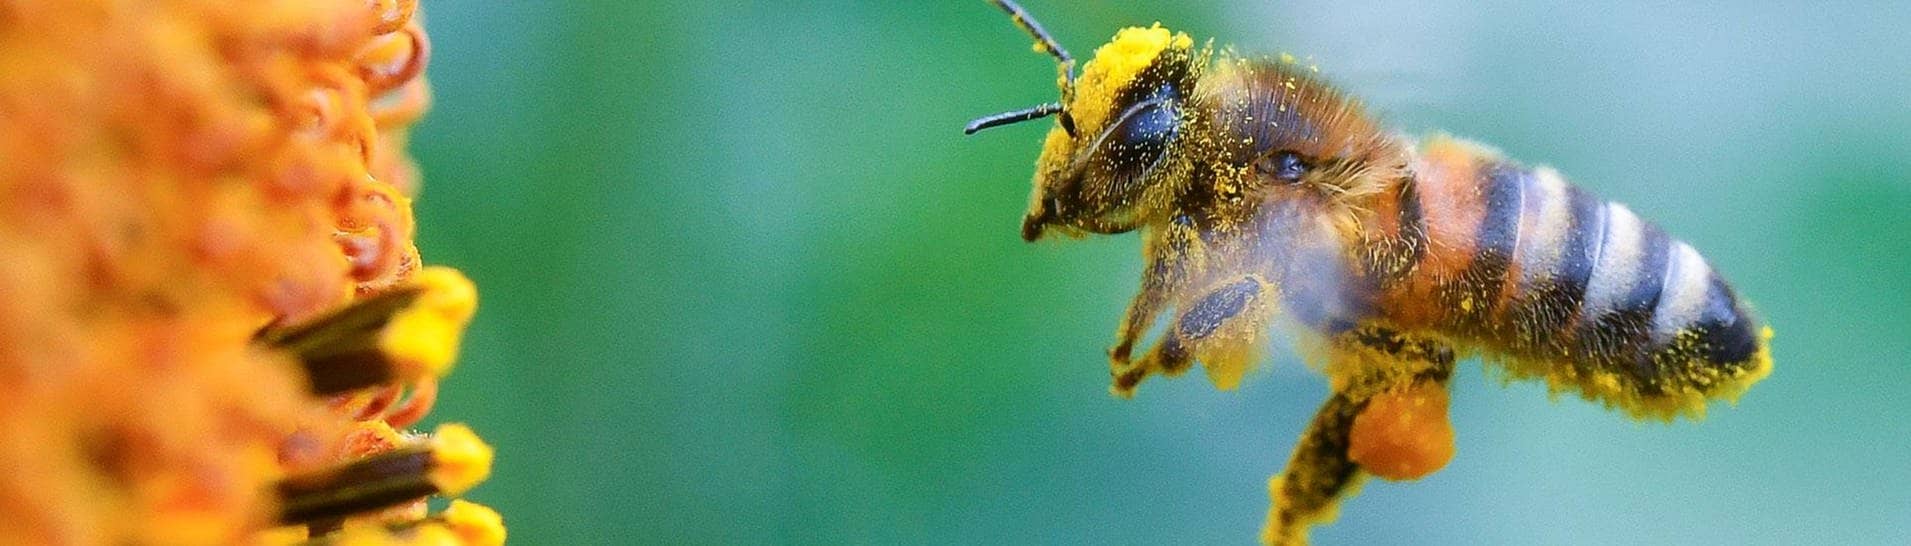 Eine Biene sammelt Nektar